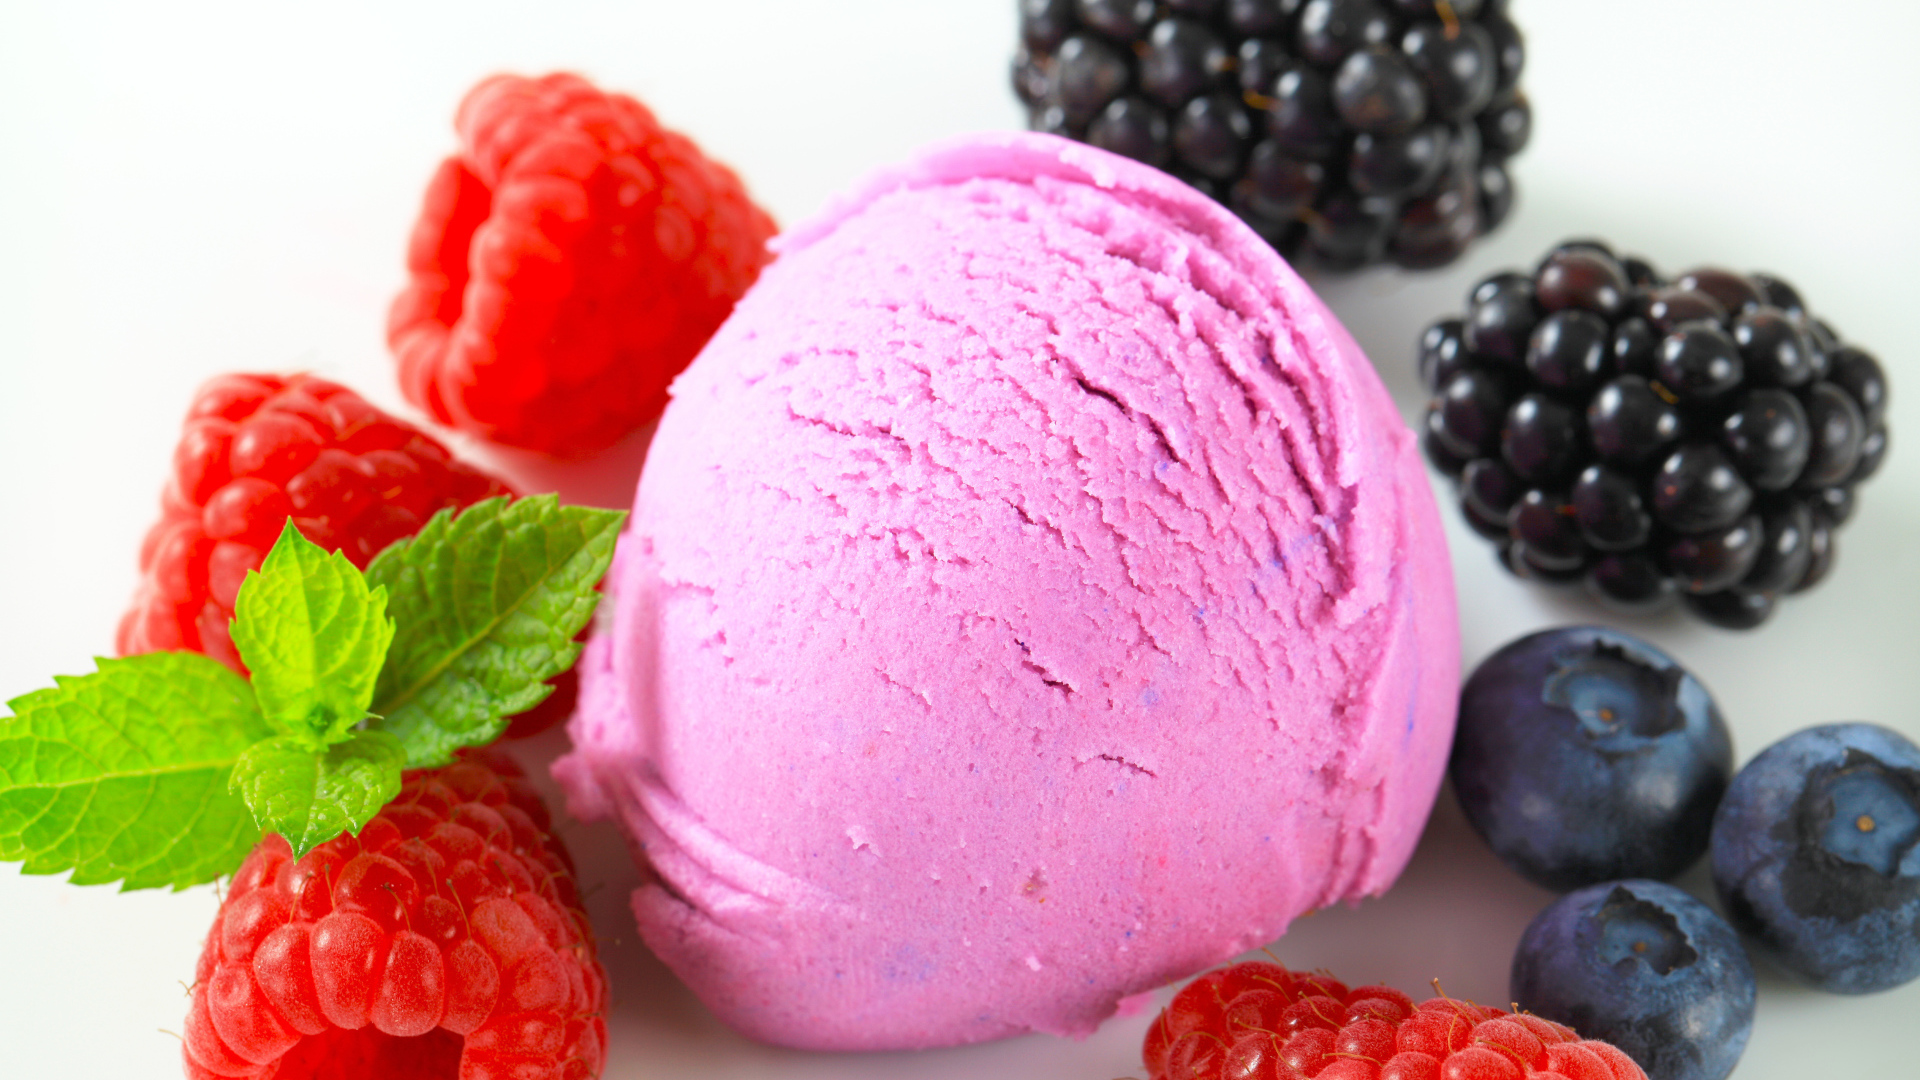 Шарик мороженого с ягодами малины, черники и ежевики 